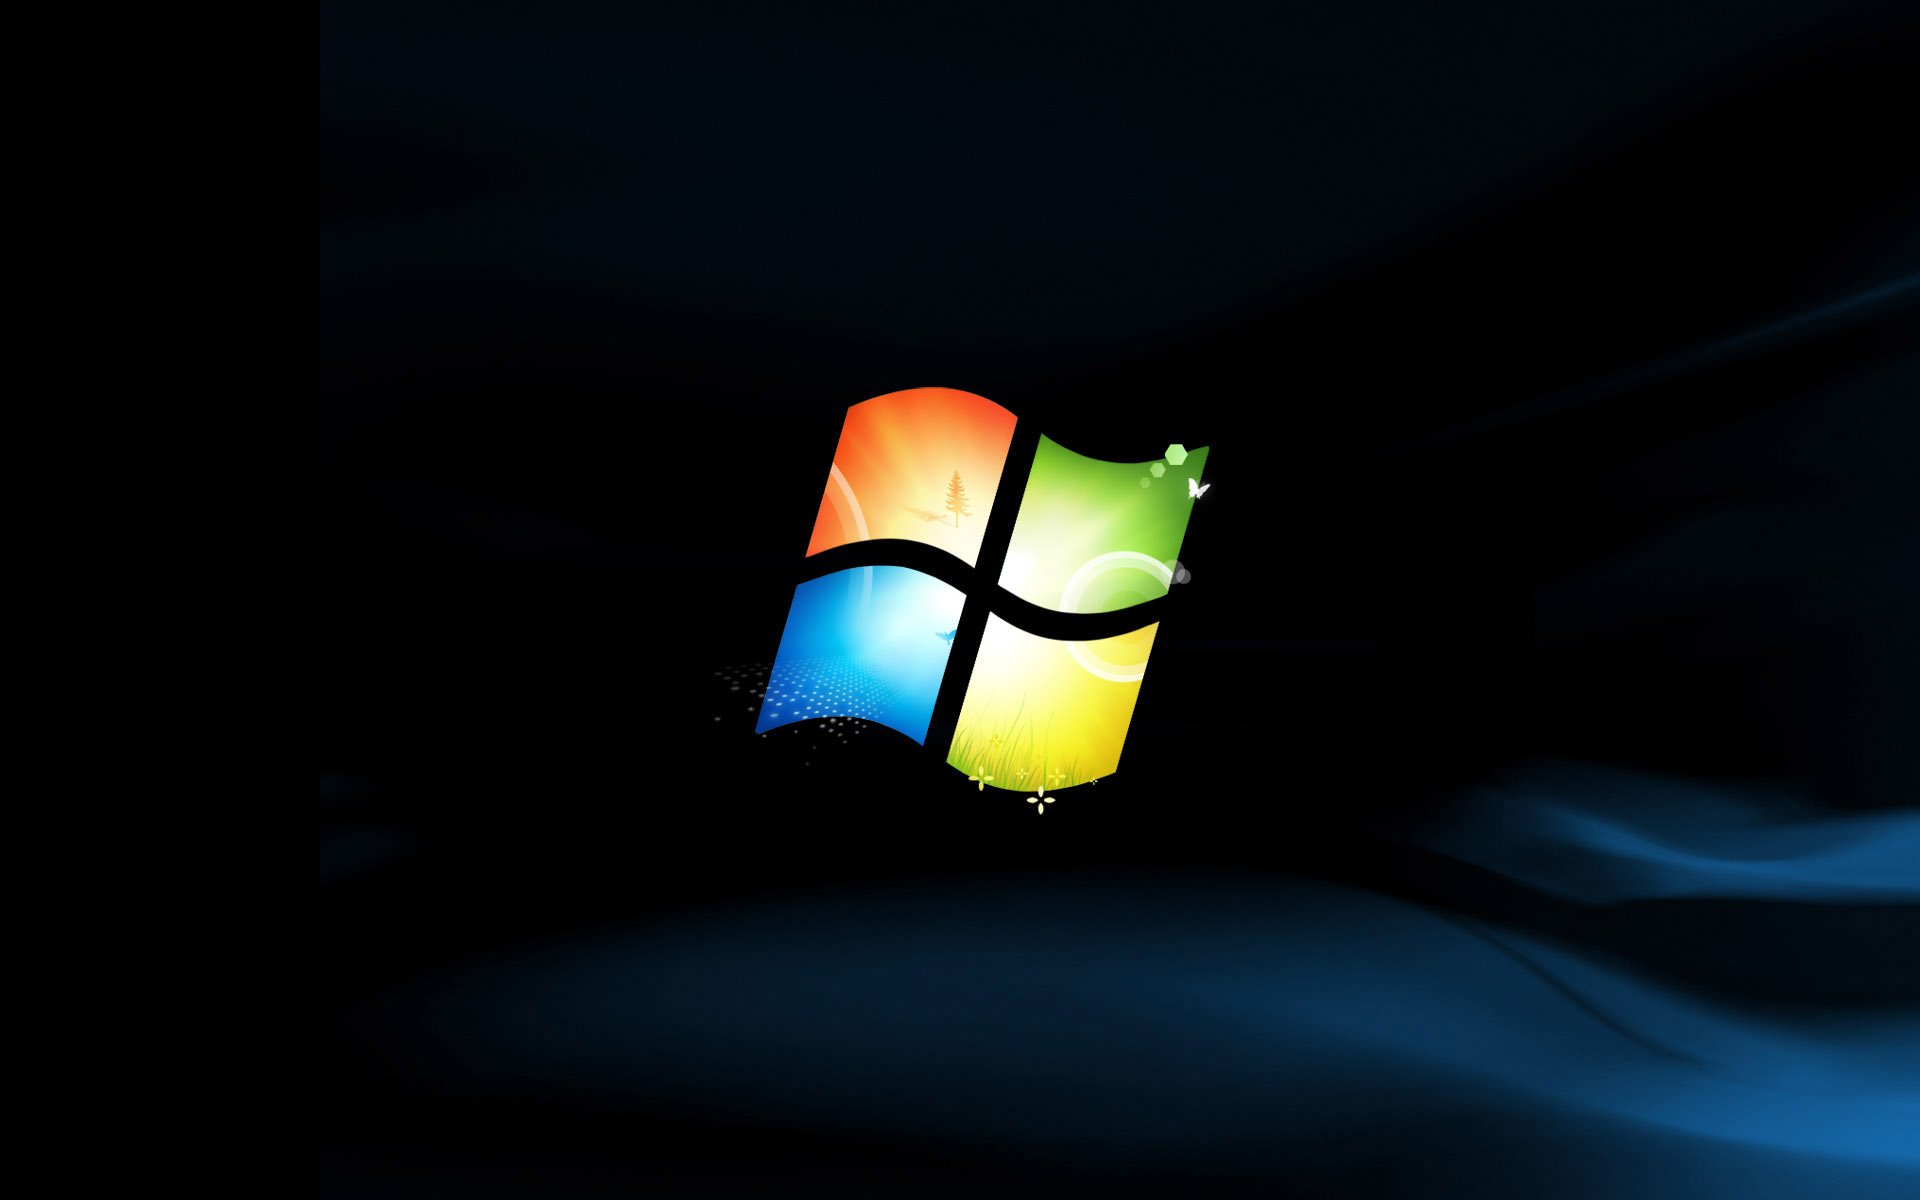 Windows7 专题壁纸18 - 1366x768 壁纸下载 - Windows7 专题壁纸 - 系统壁纸 - V3壁纸站